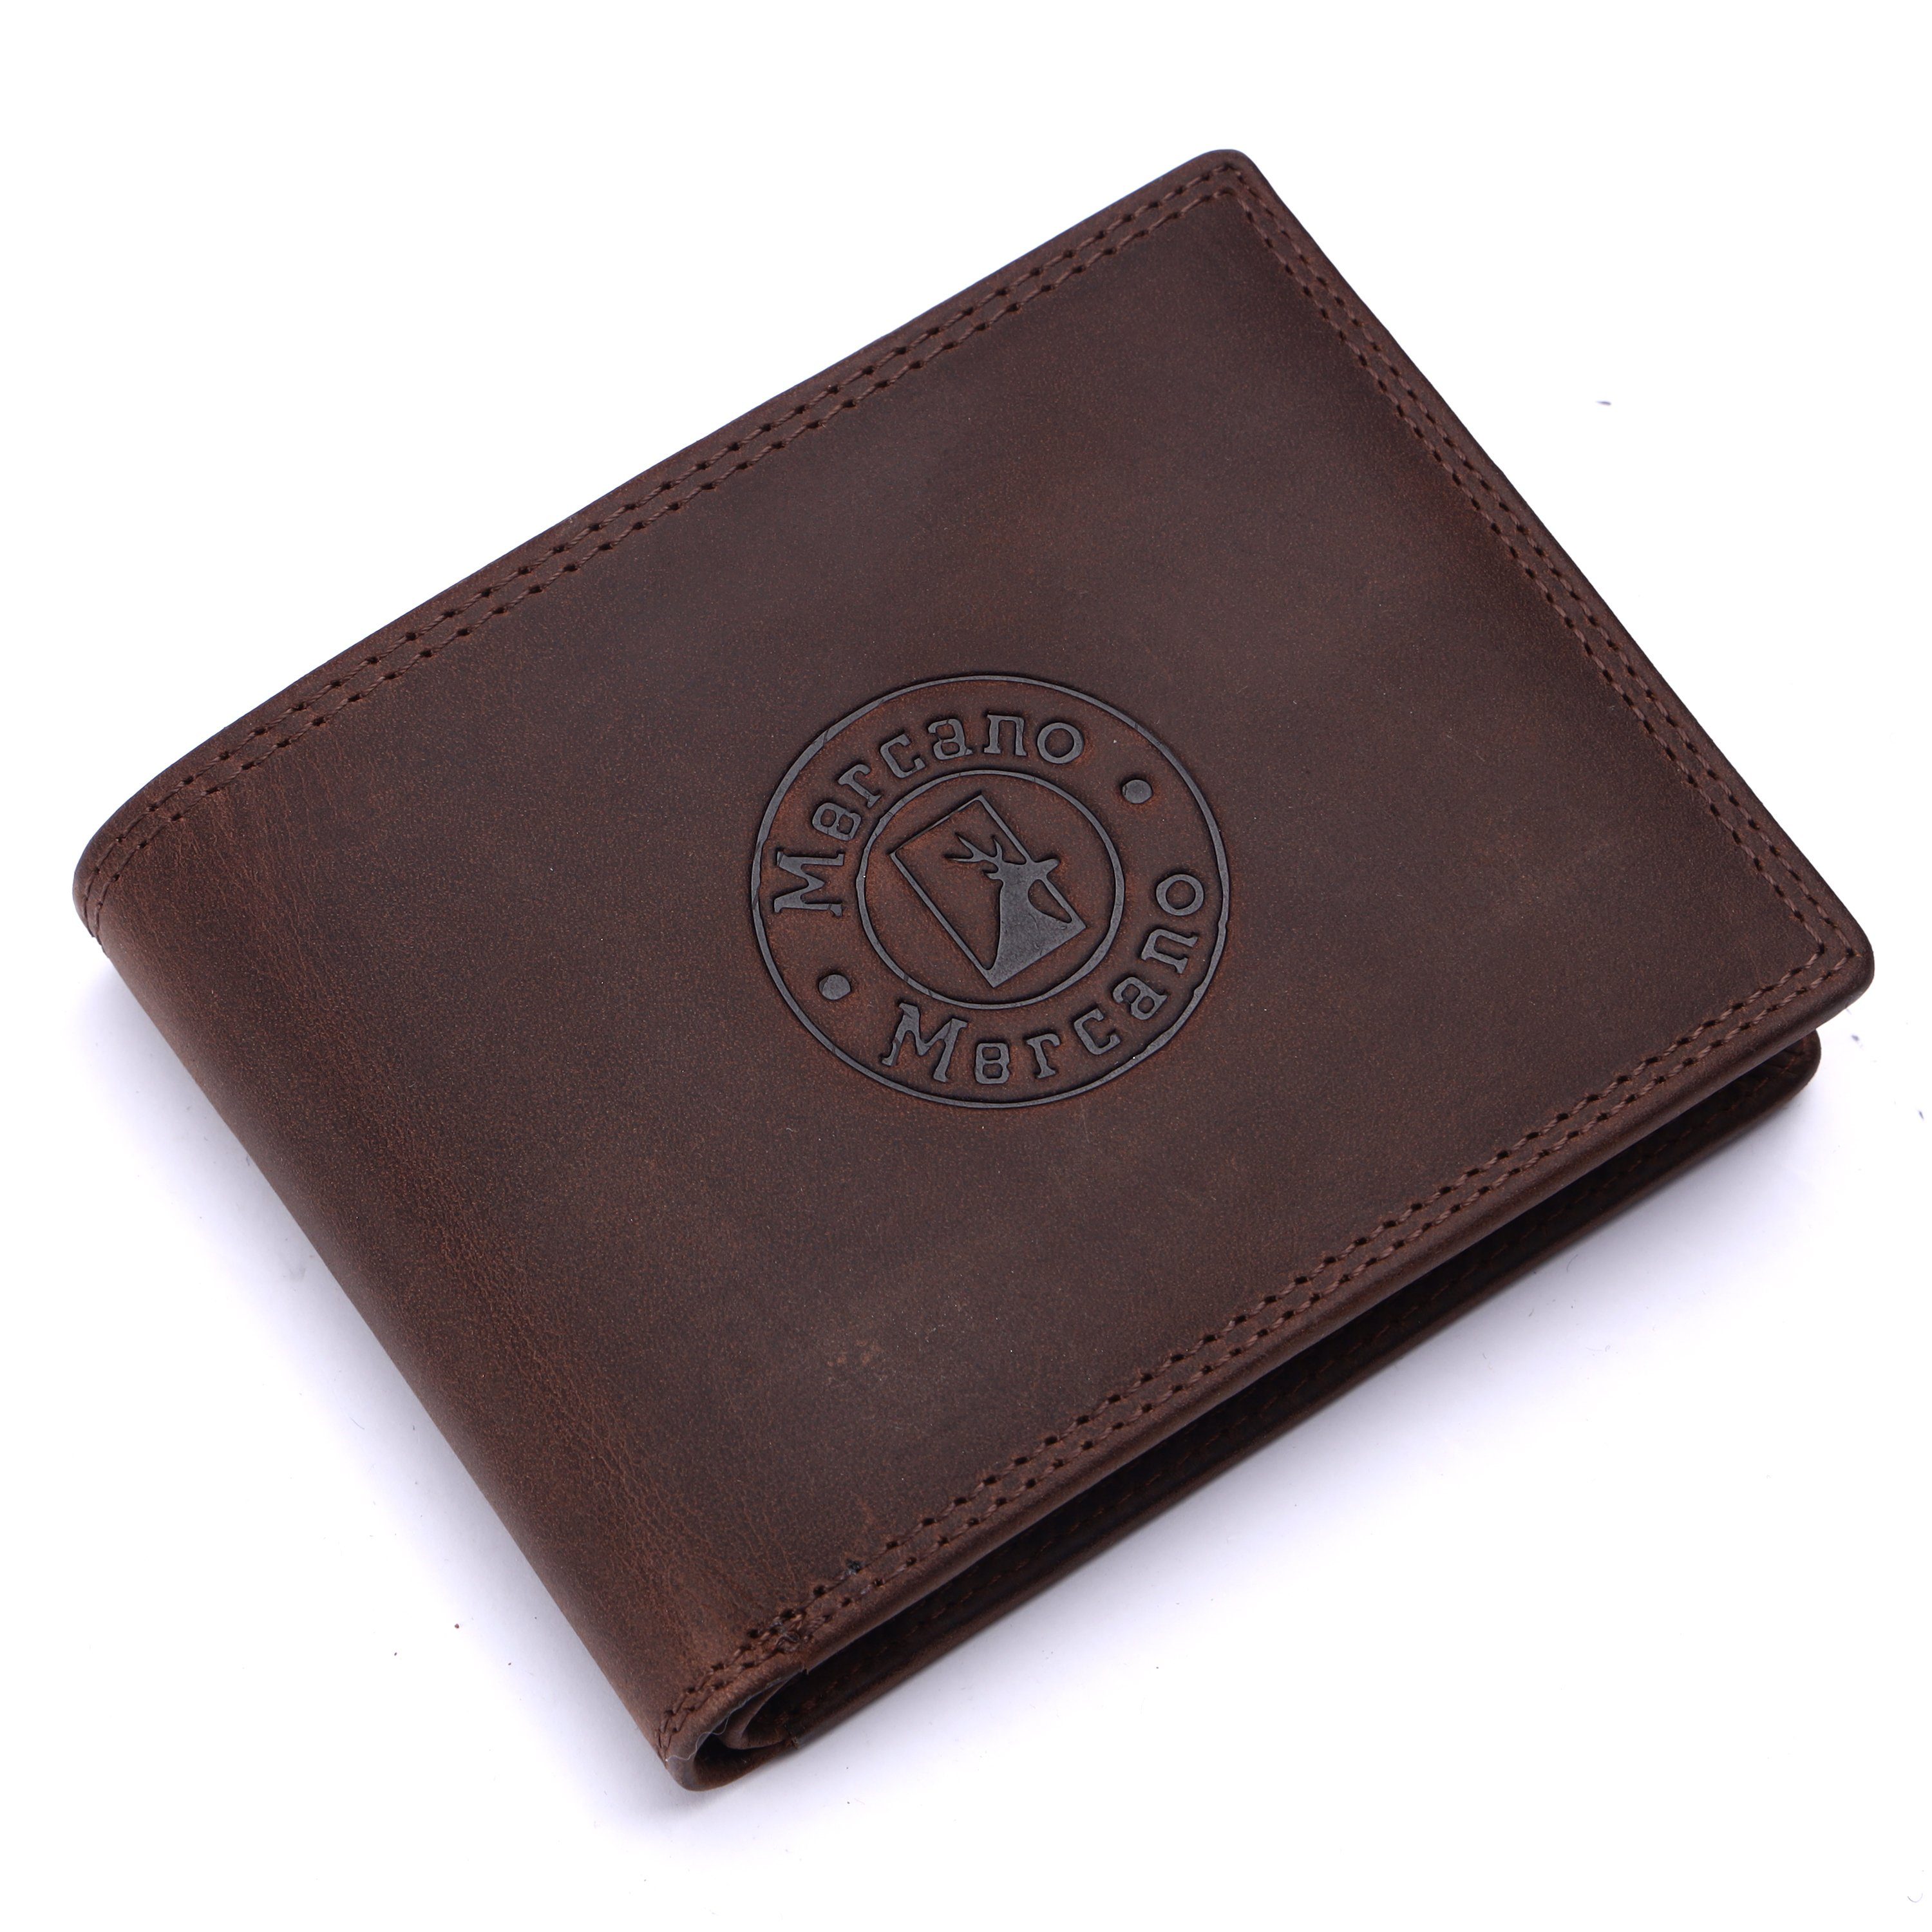 Mercano Geldbörse für Herren, Leder Doppelnaht, Vintage aus & 100% mit RFID-Schutz Geschenkbox dunkelbraune inkl